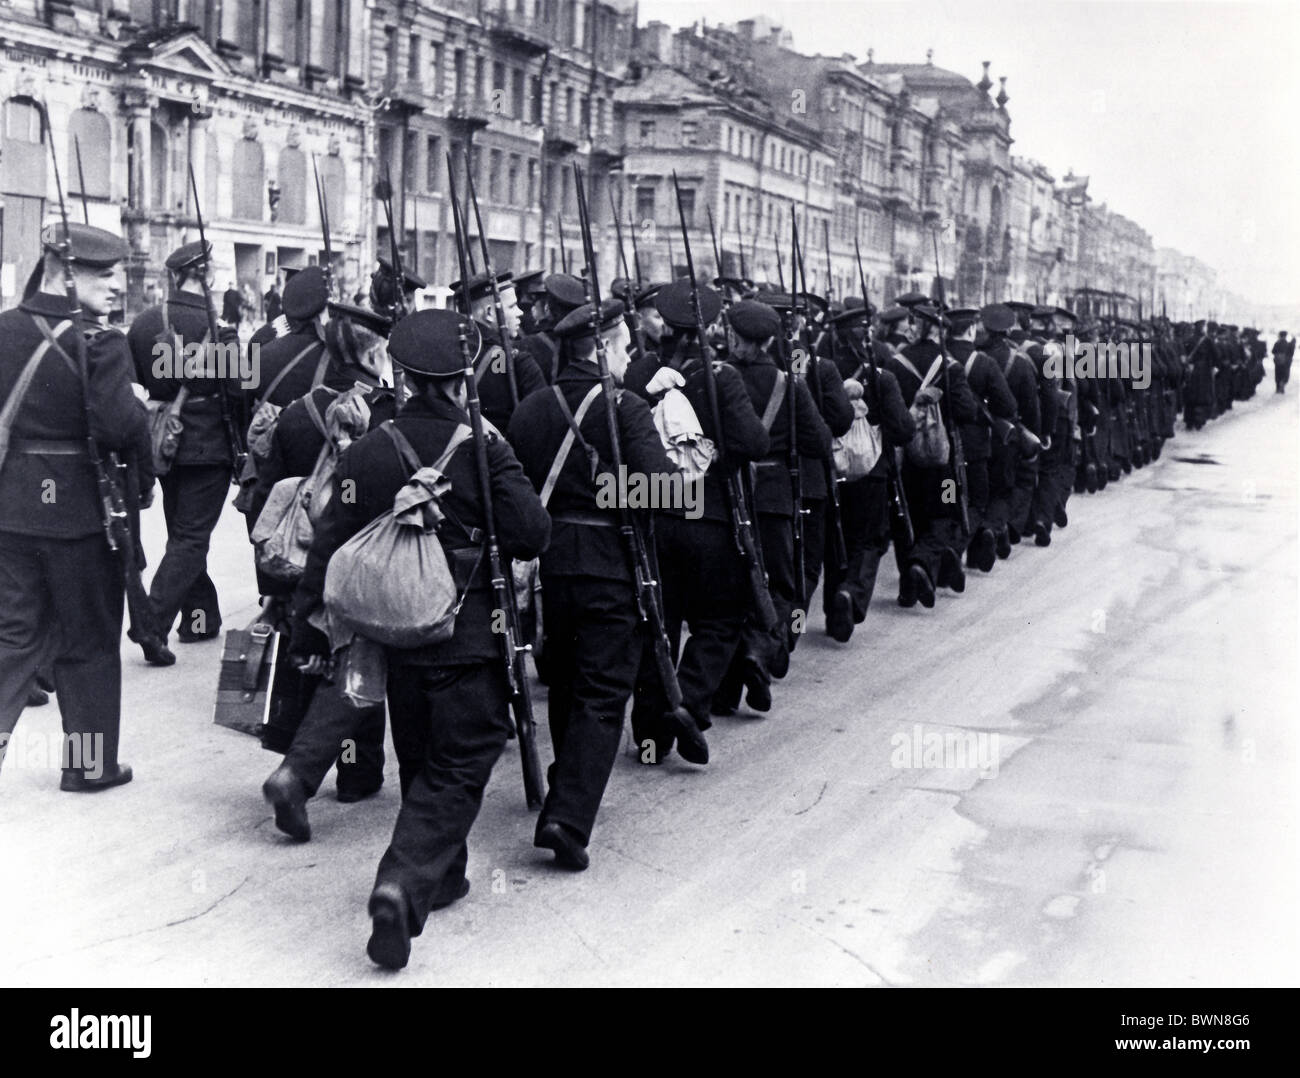 Leningrad 1942 soldats marines histoire URSS Russie historique historique de l'Union soviétique, la ville de Saint-Pétersbourg S Banque D'Images